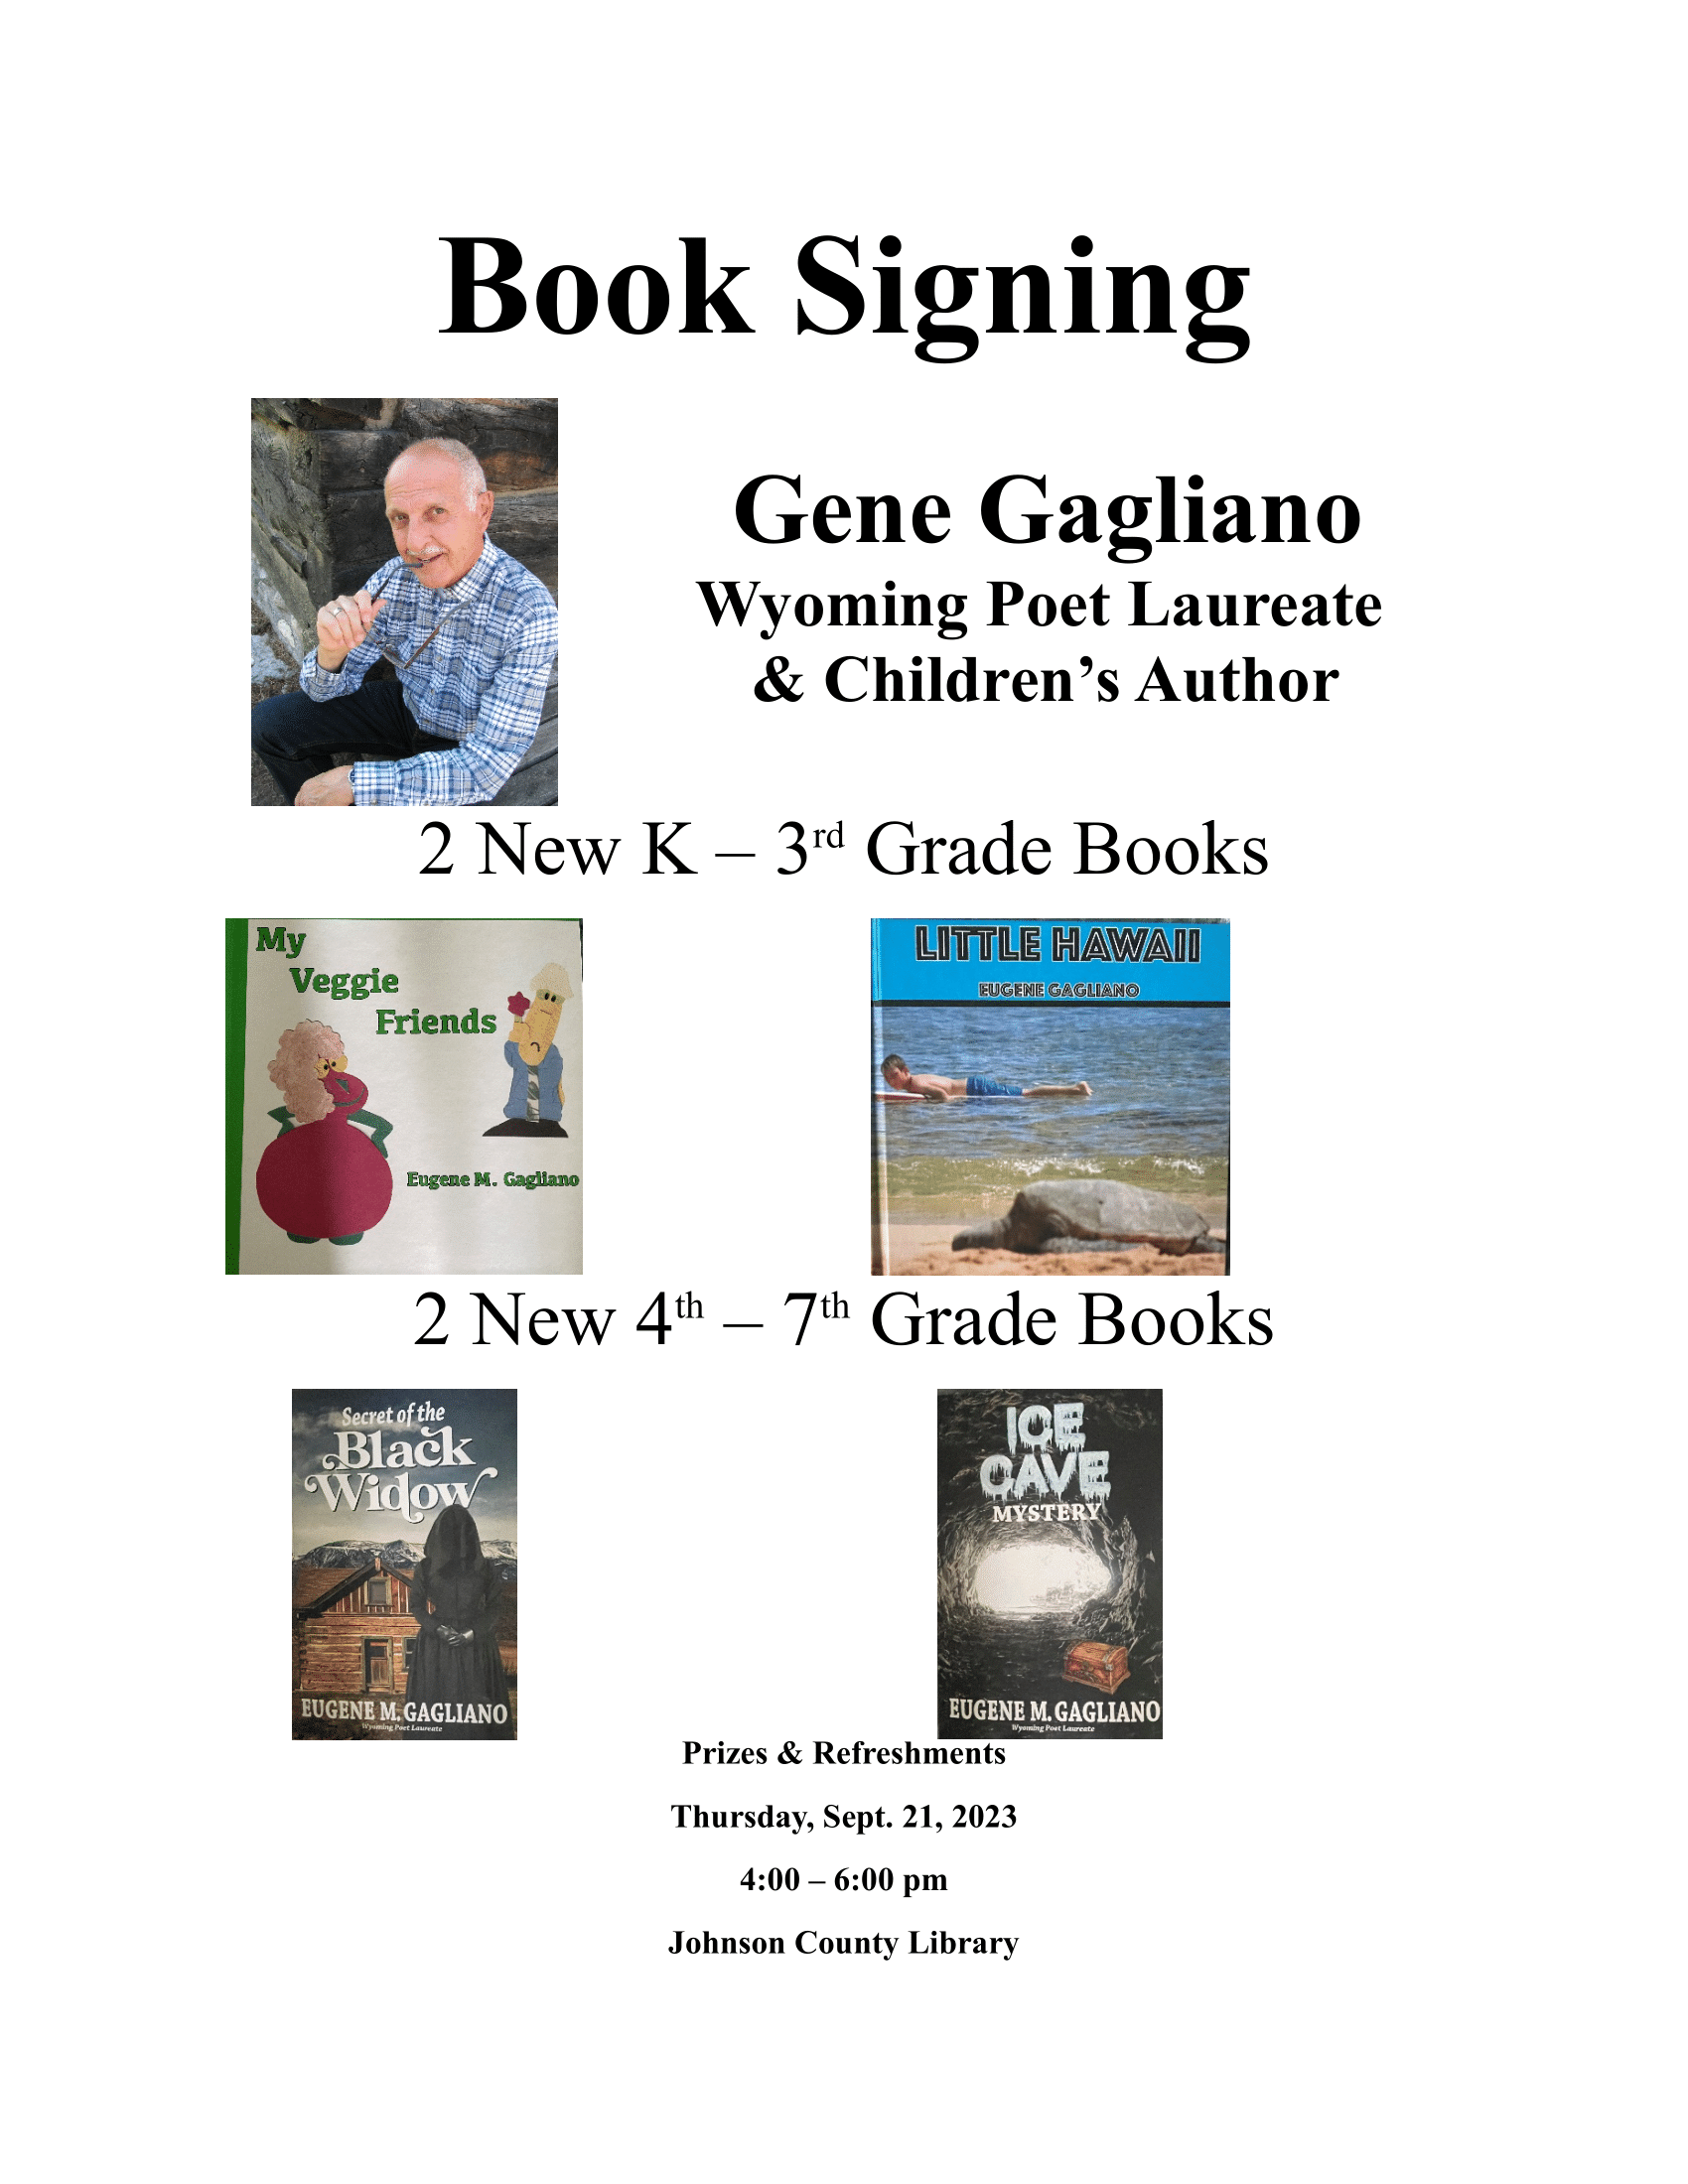 Gene Gagliano Author Signing Image